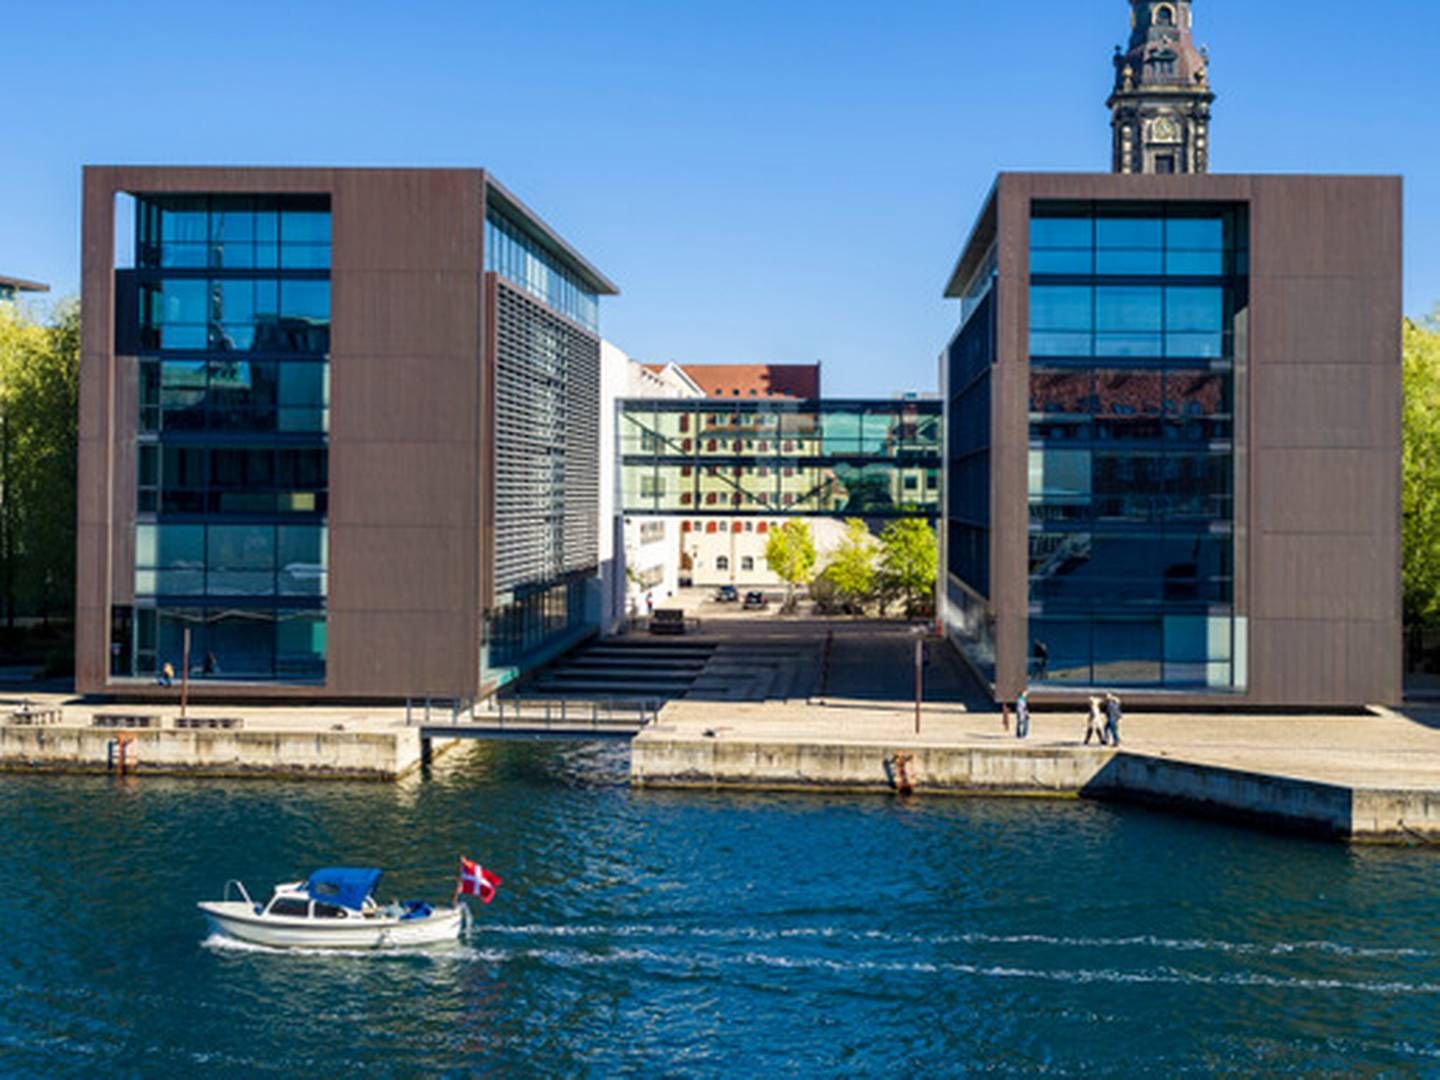 Netcompanys nye hovedkontor på Christianshavn i København | Foto: Pr / Atp Ejendomme